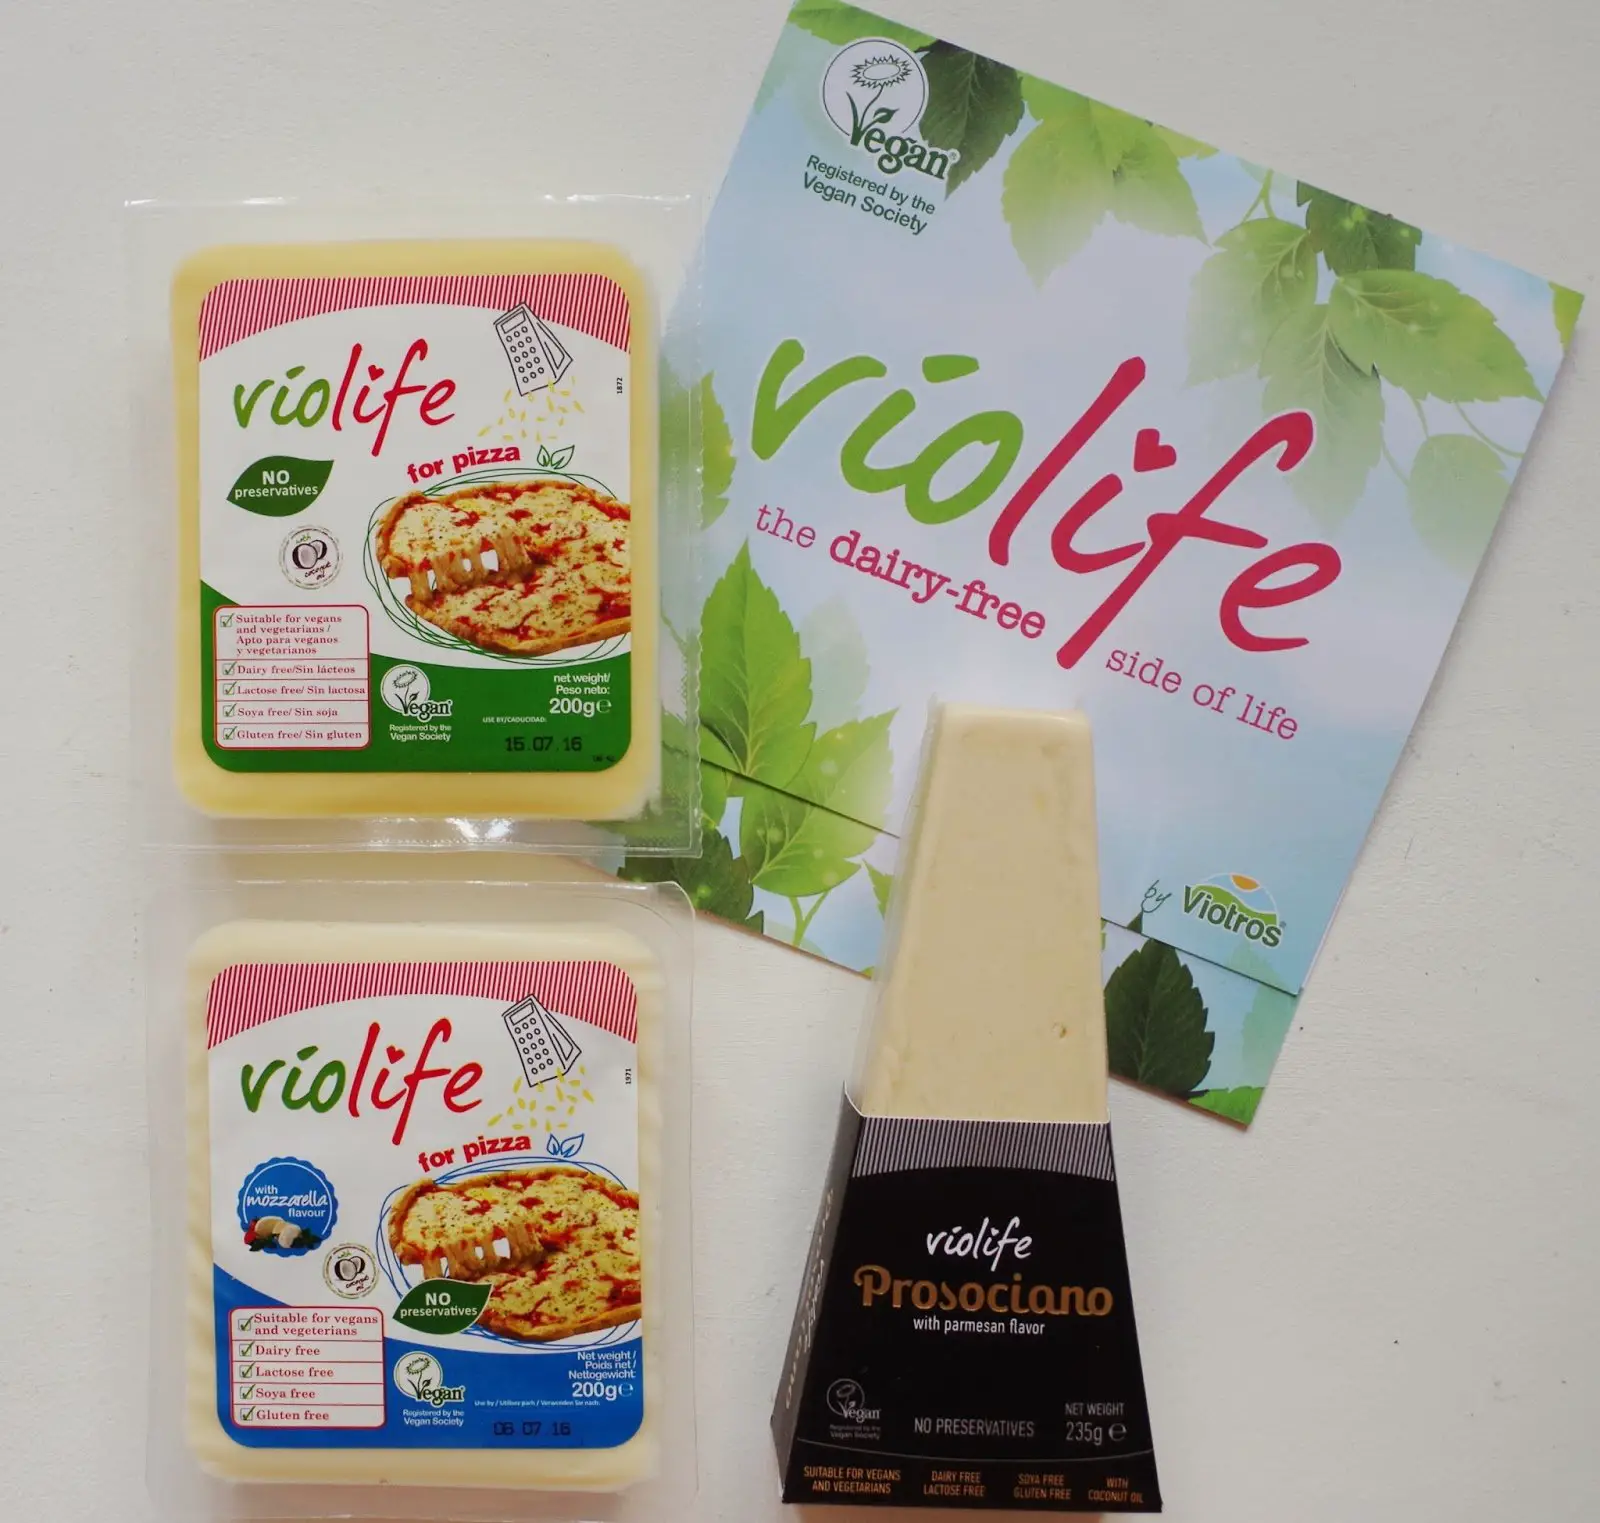 Violife: The Very Best of Vegan Cheese